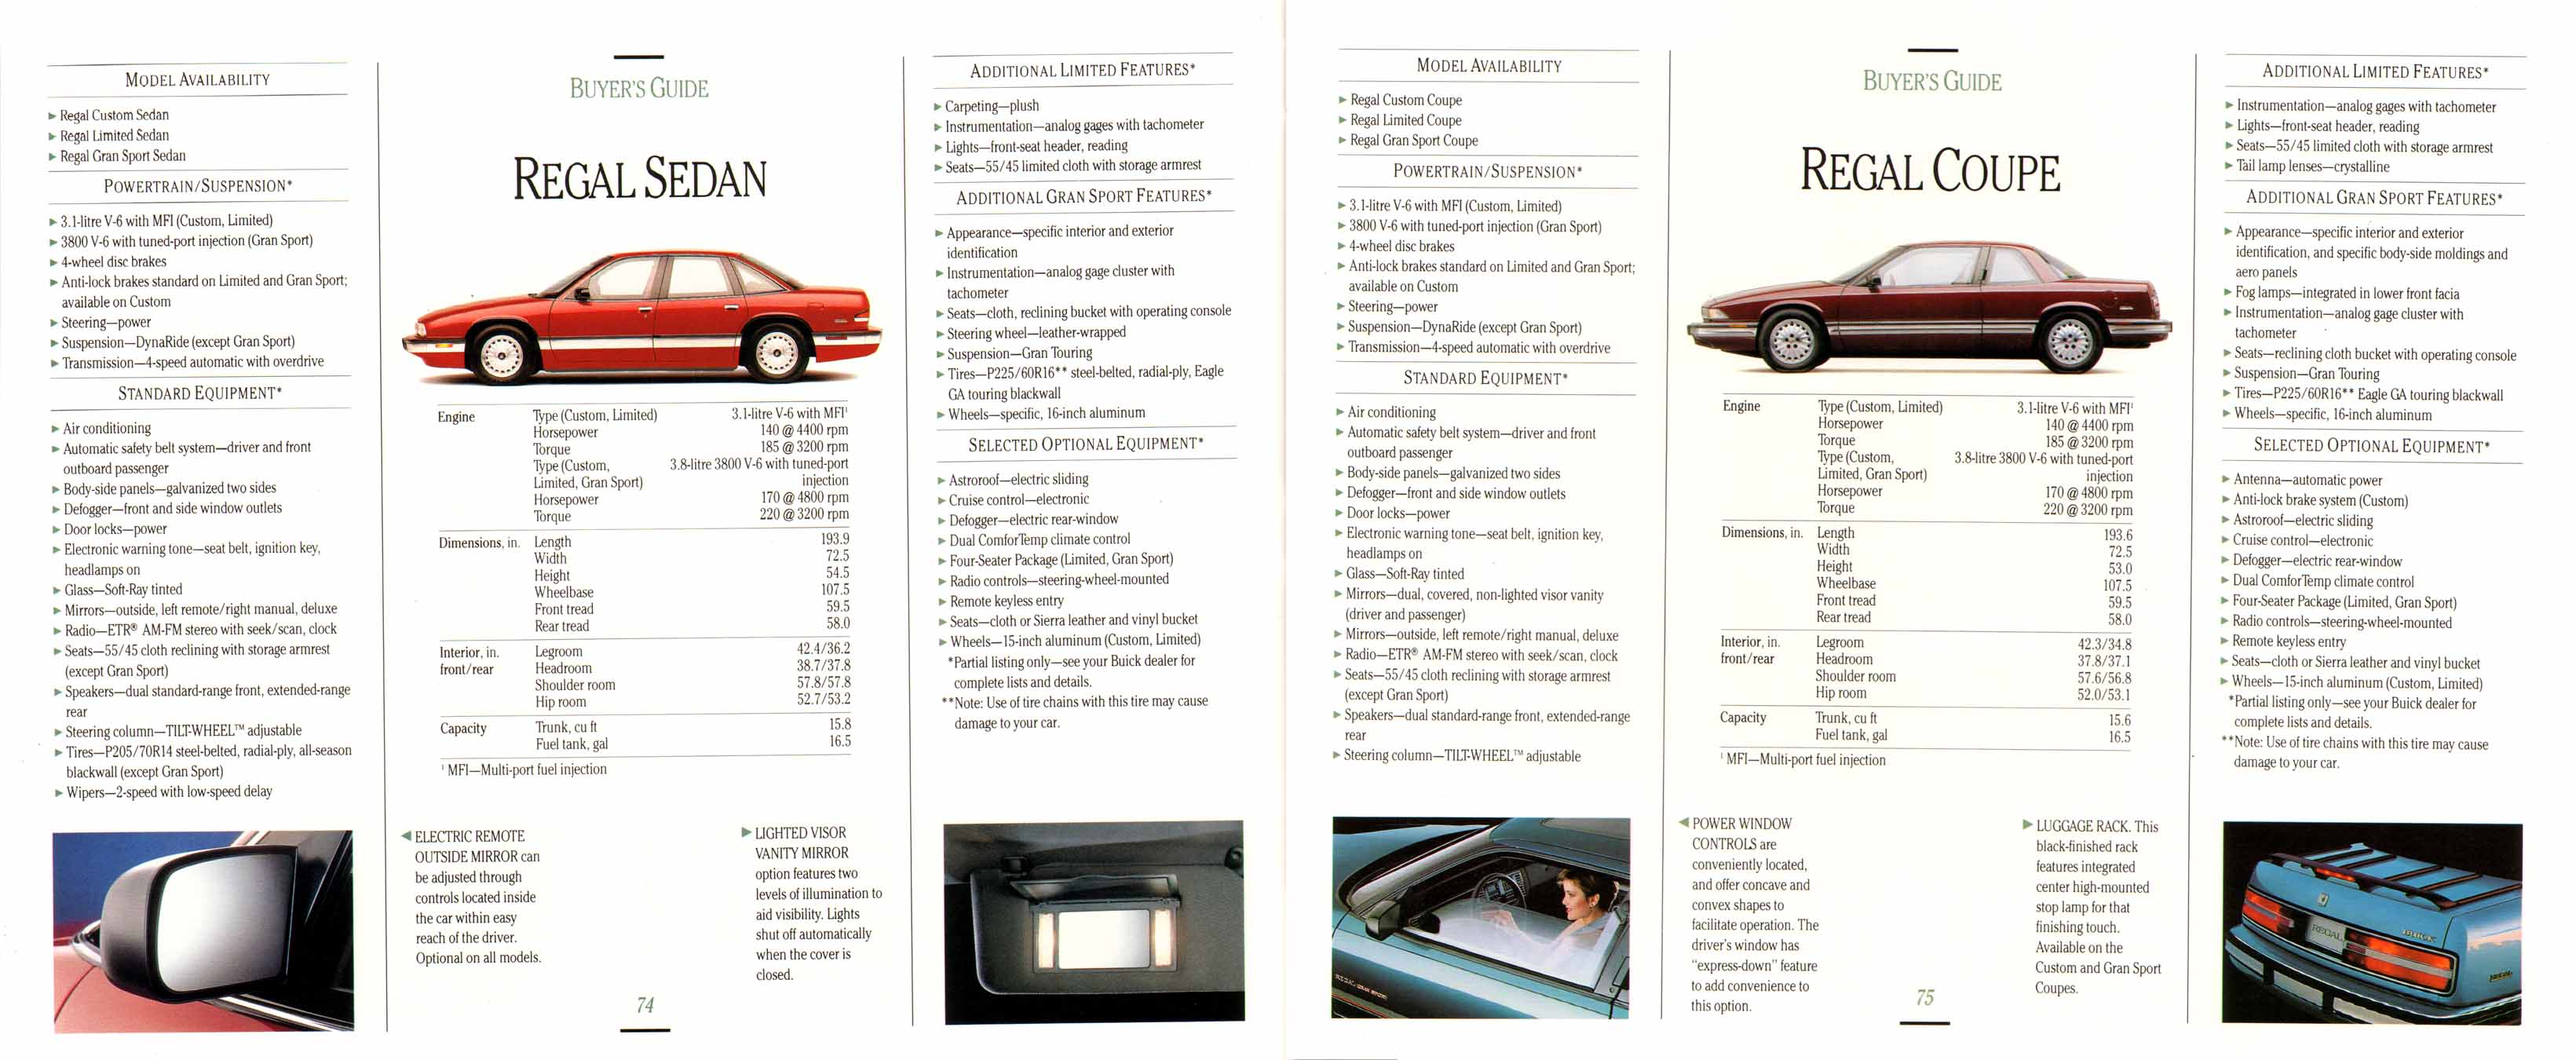 1992 Buick Full Line Prestige-74-75